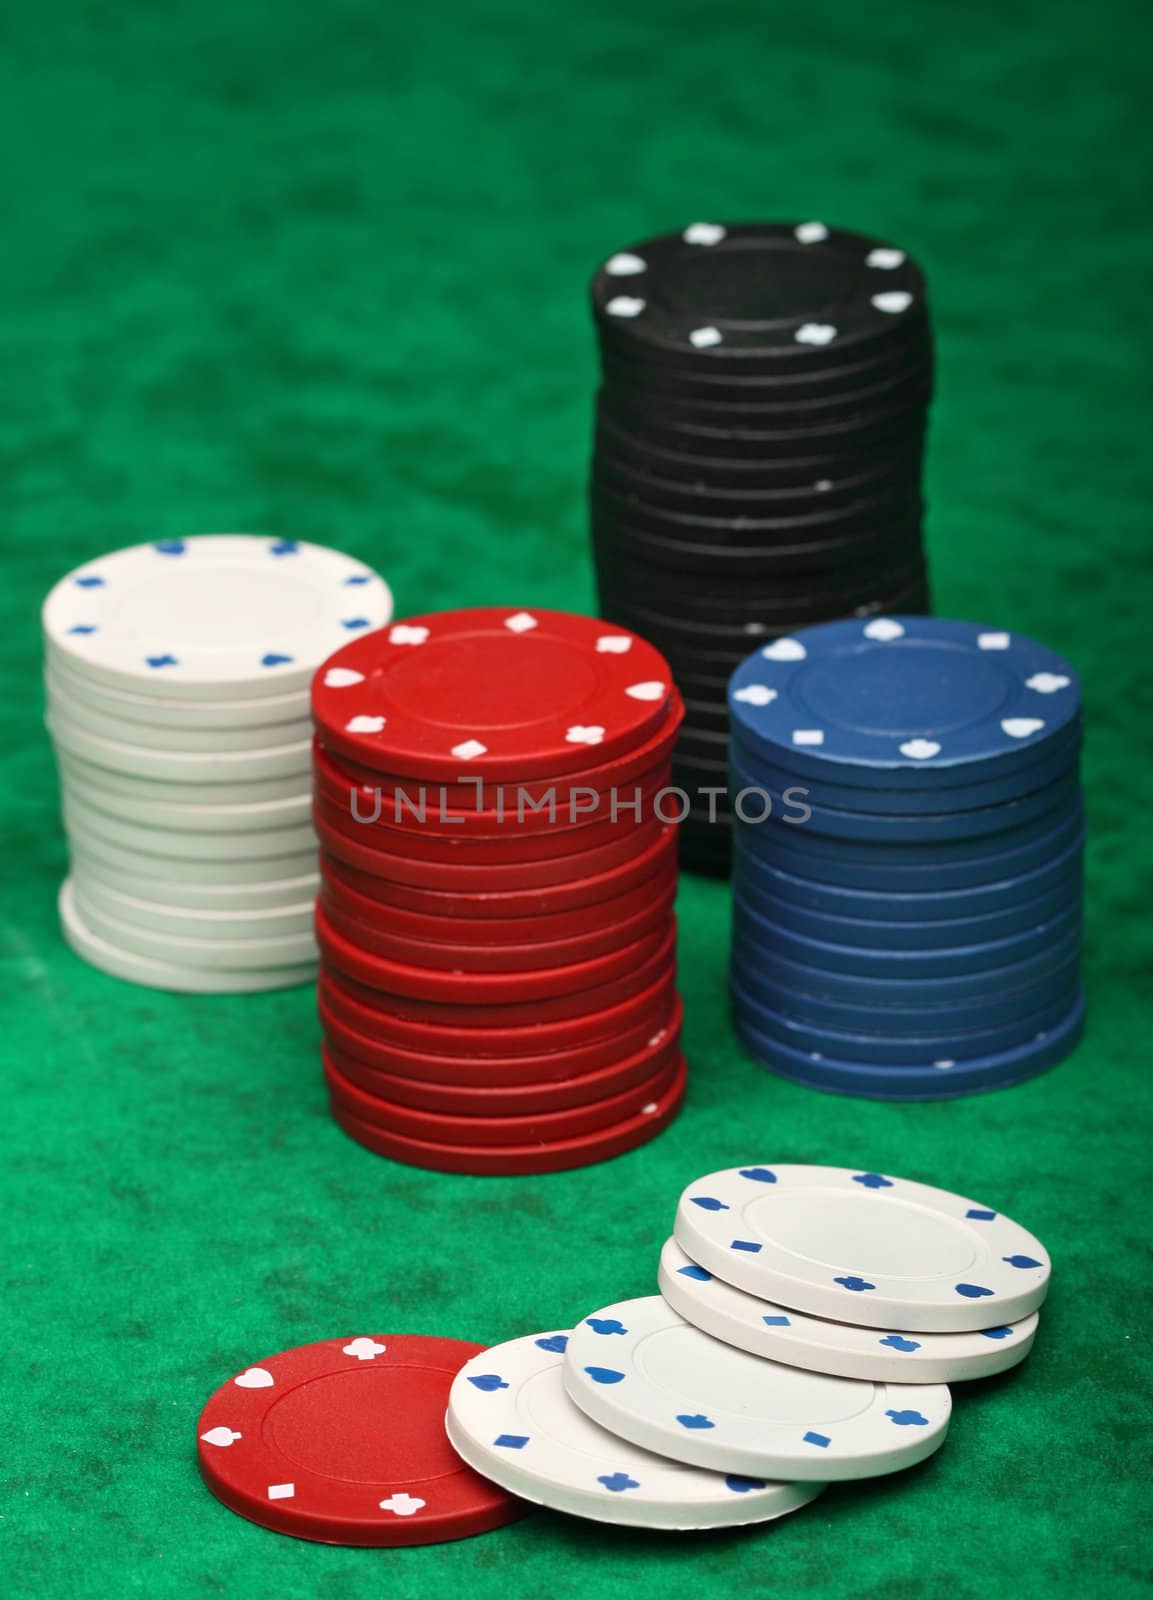 Gambling chips over green felt, I�ve got more poker images